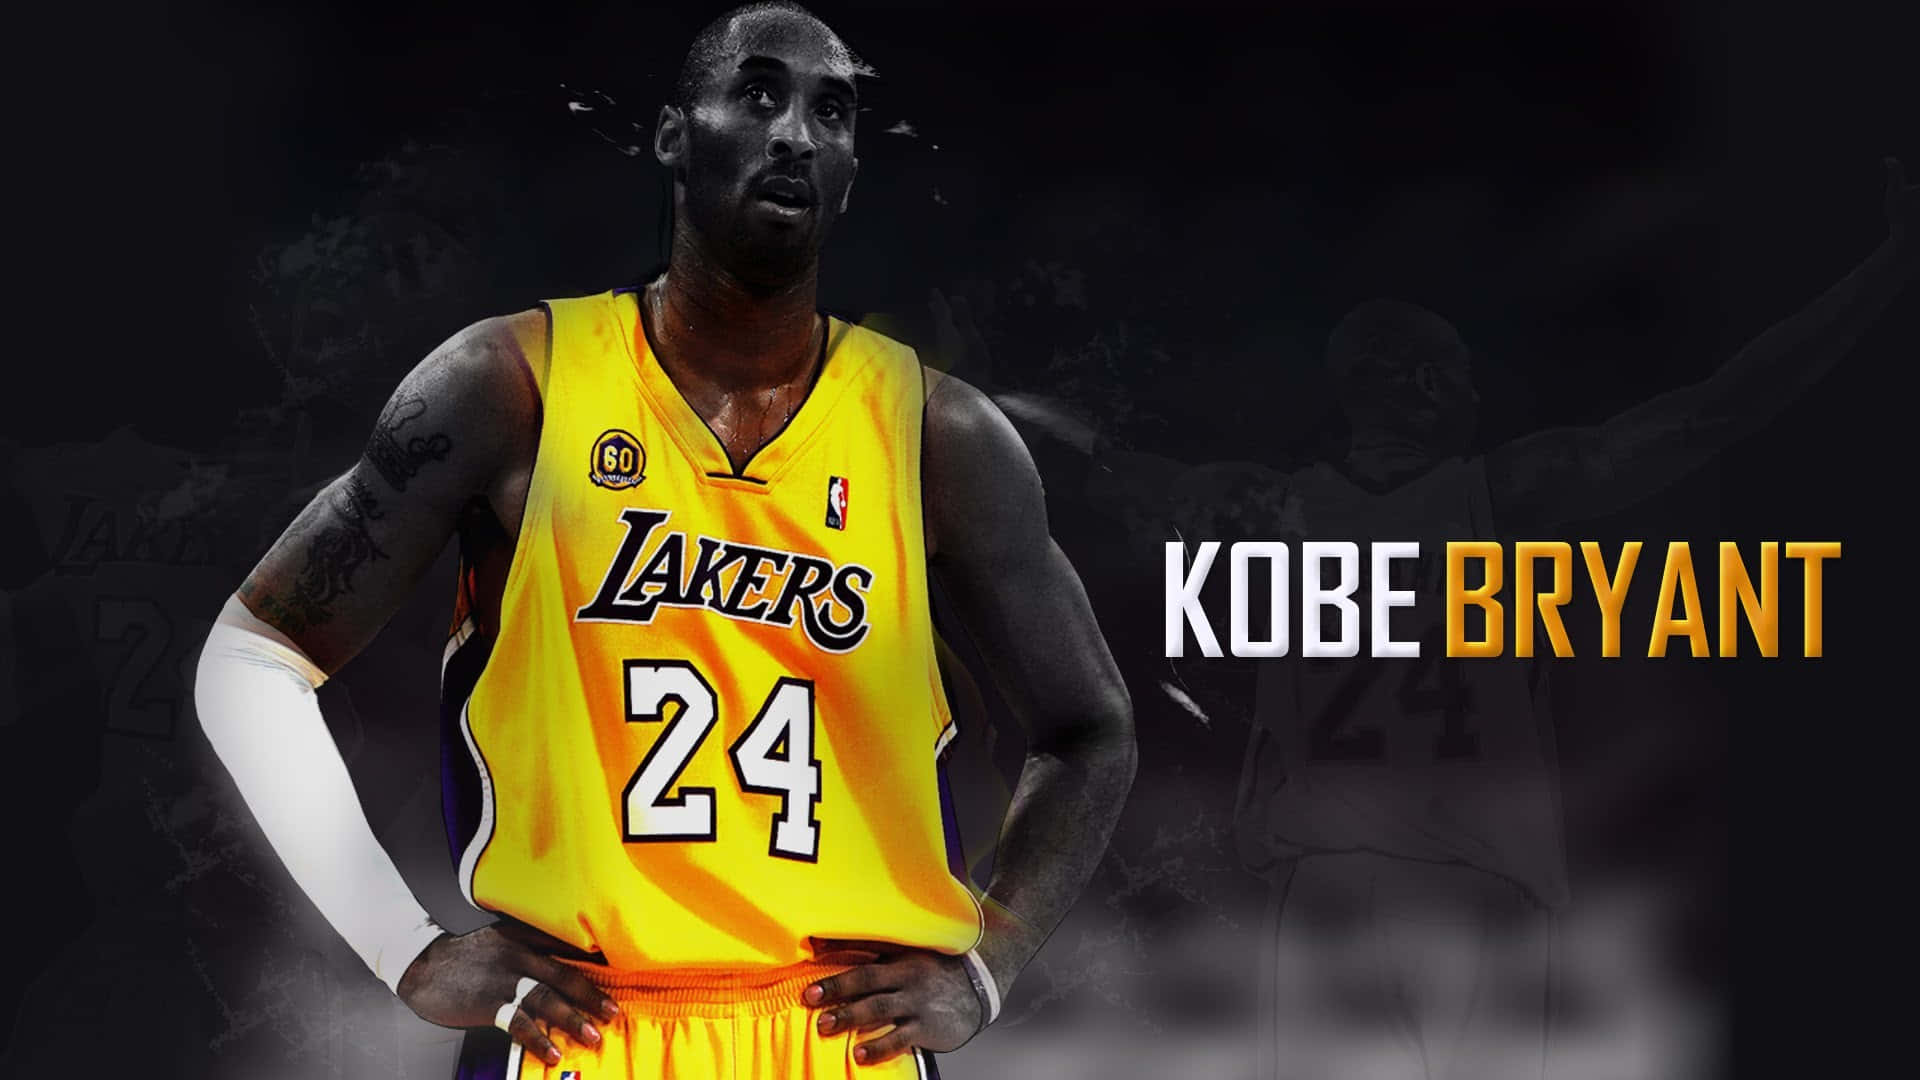 Kobe - The Phenomenal Basketball Champion